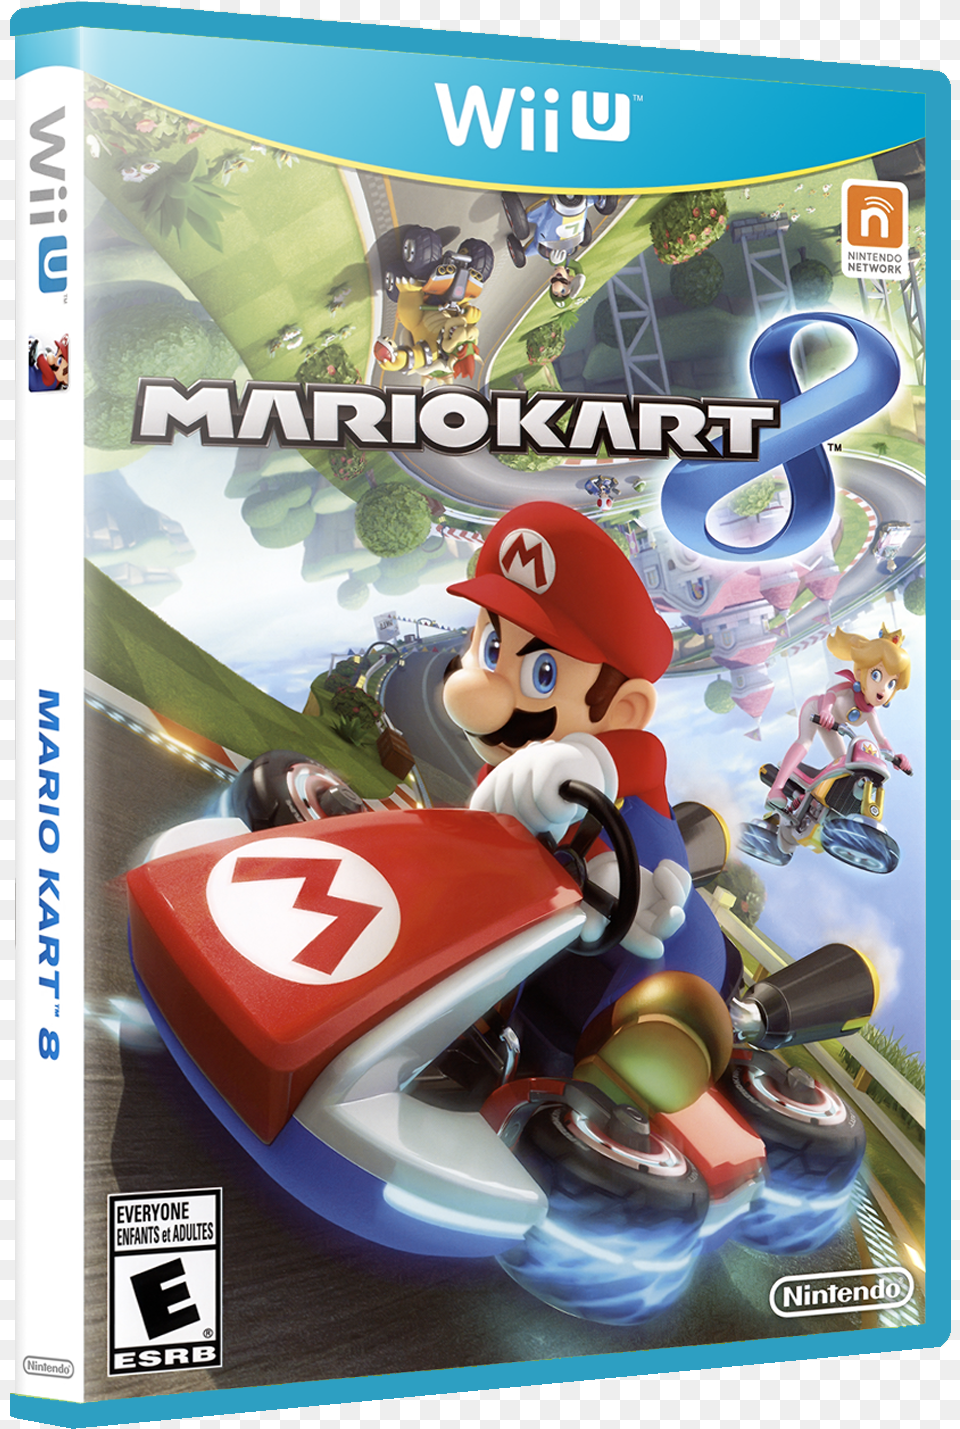 Mario Kart Mario Kart 8 Nintendo Wii U, Baby, Person, Vehicle, Transportation Png Image